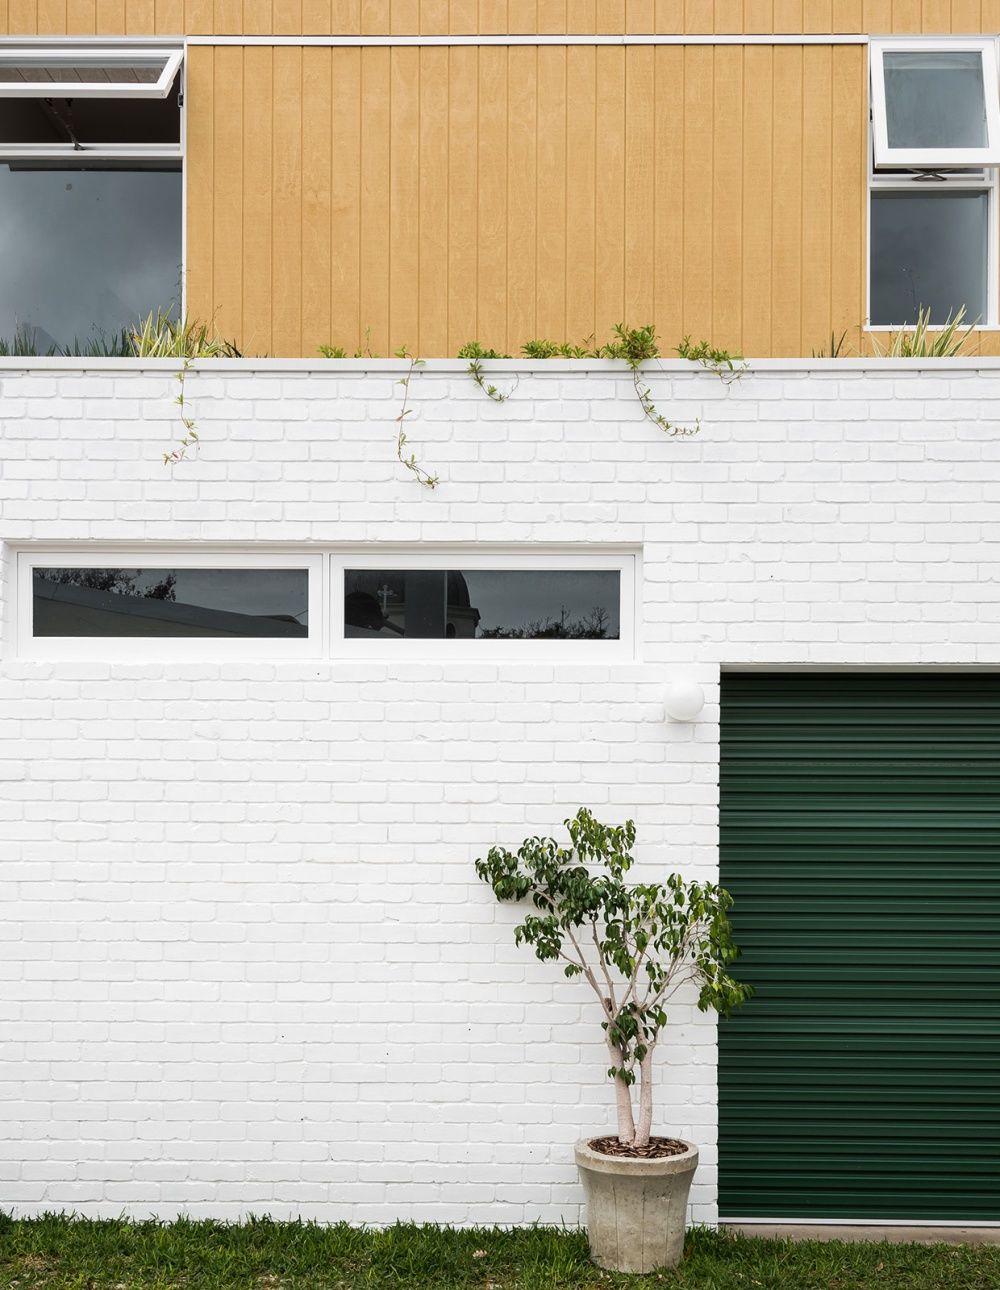 Mảng tường trắng cùng cây xanh bên trên tạo nét bình dị ngay từ bên ngoài ngôi nhà